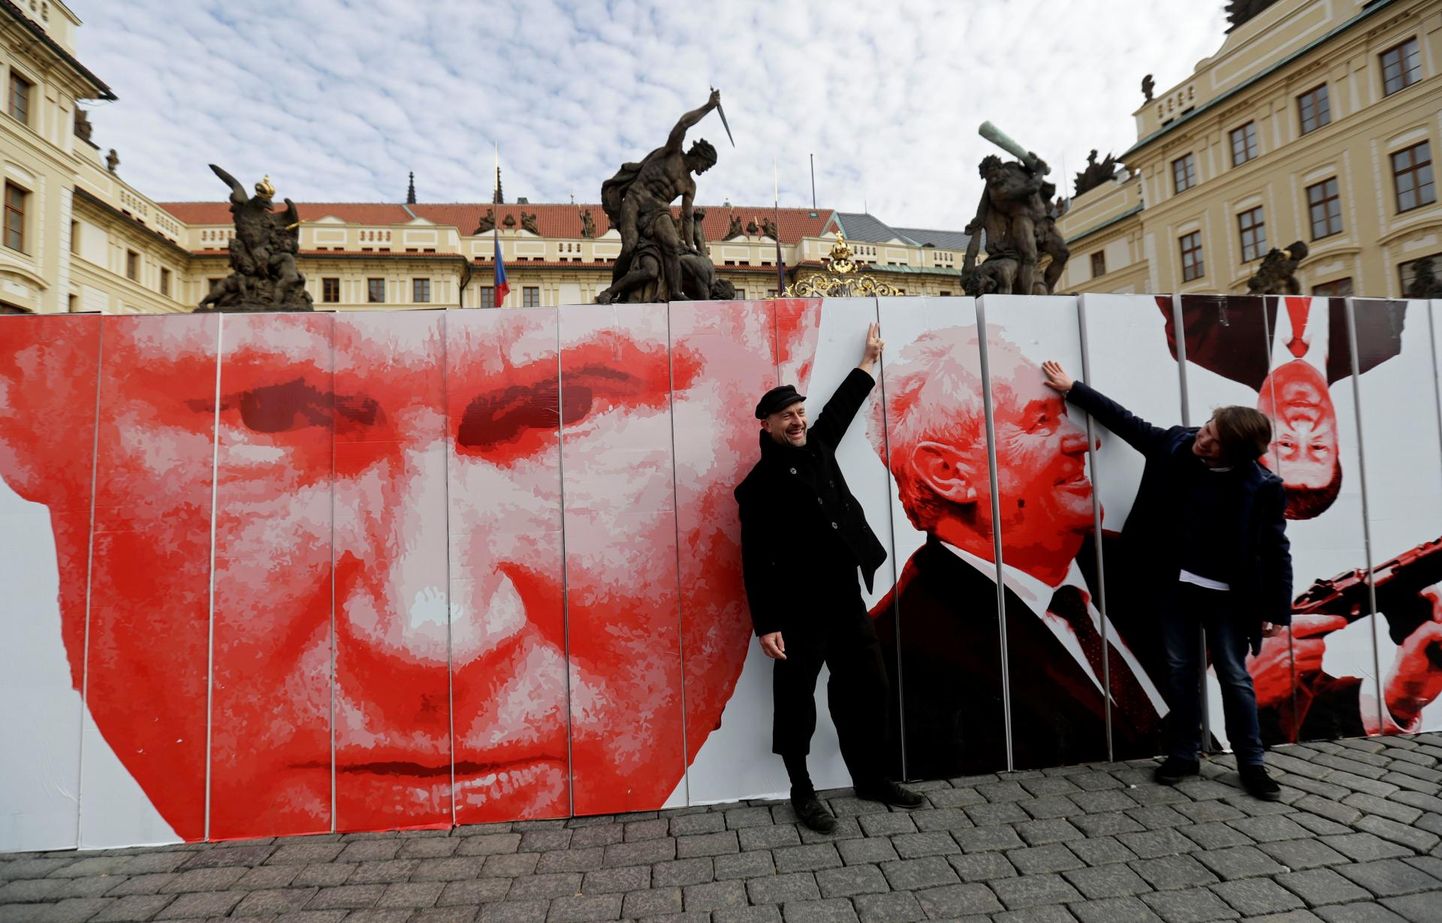 Kriitikud on Tšehhi presidenti Miloš Zemanit süüdistatud liiga sõbralikus suhtumises Venemaa presidendisse Vladimir Putinisse. Sellele viitab ka plakat mullu veebruaris Prahas toimunud meeleavaldusel.